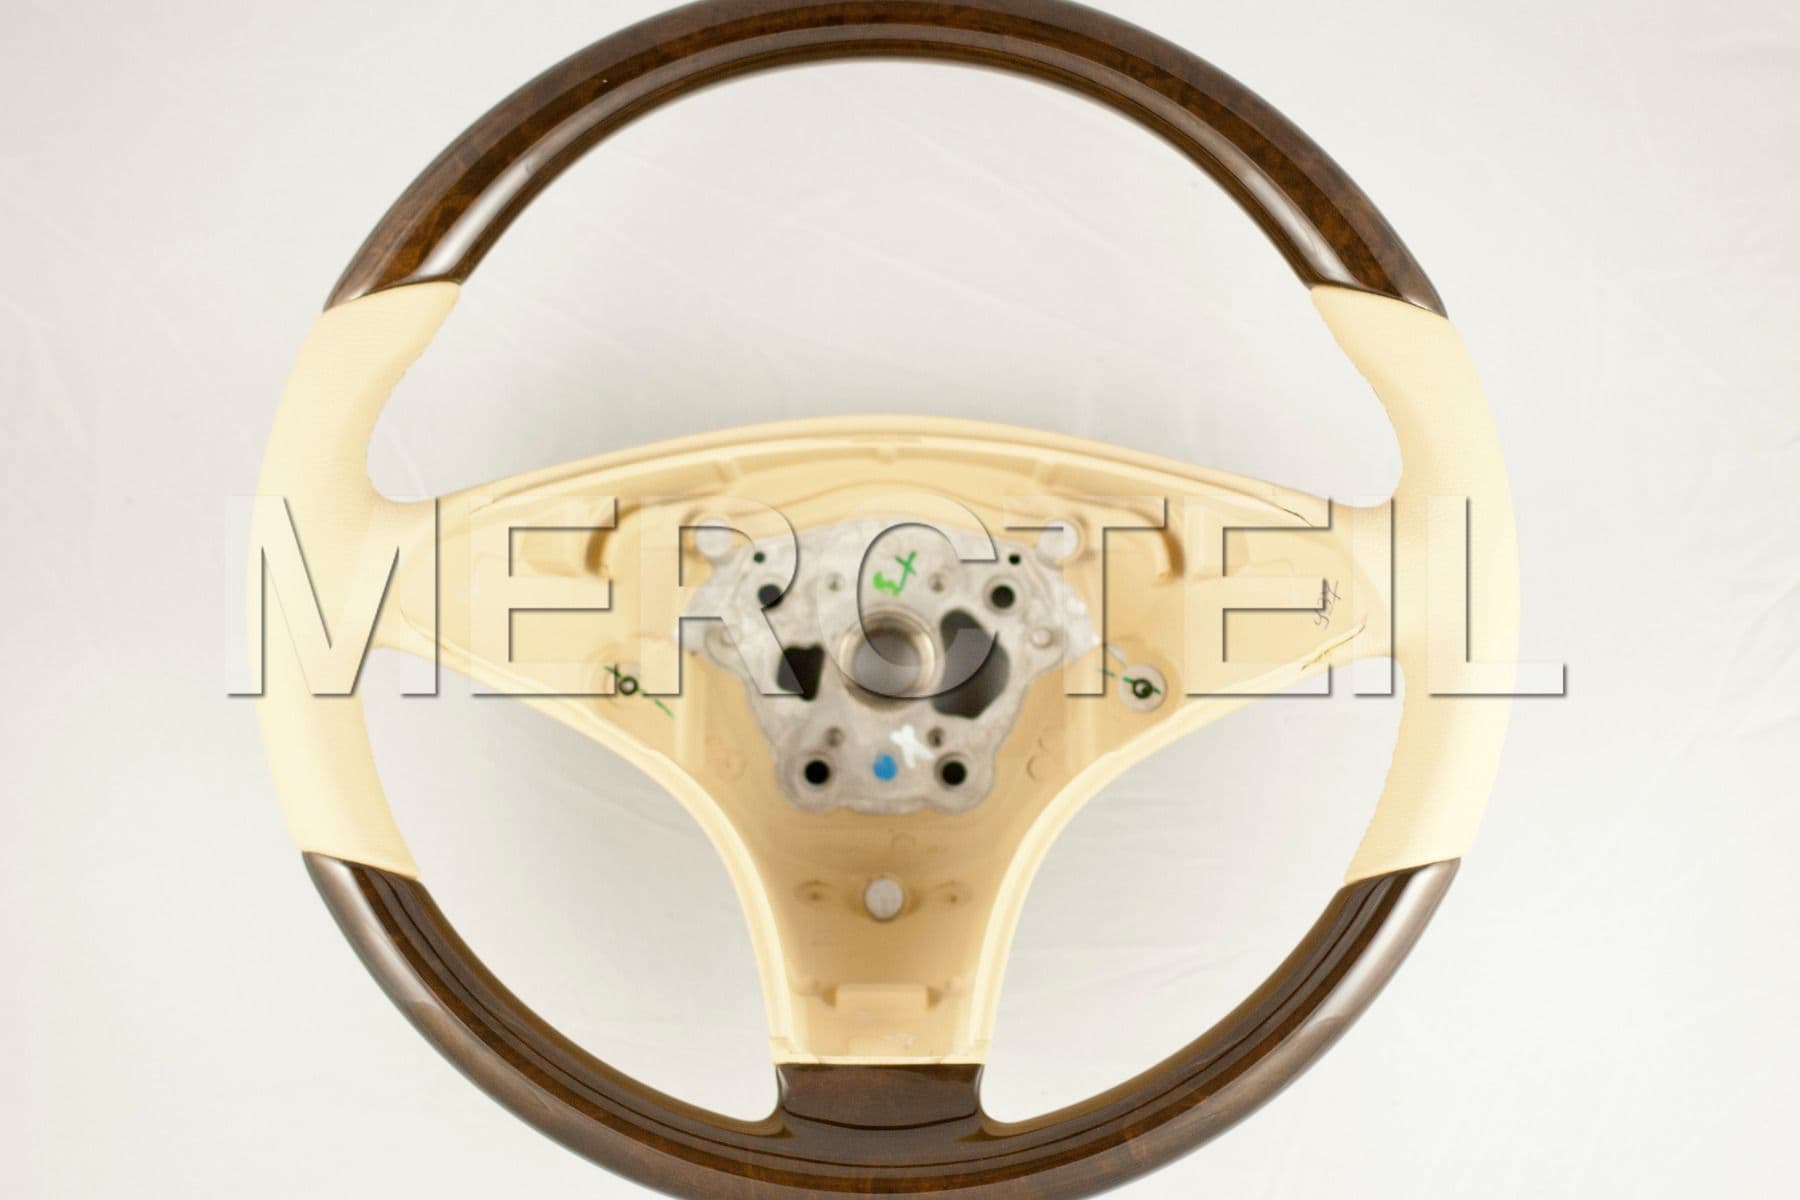 Beige Steering Wheel With Laurelwood veneer for CLS-Class; A23046031188N71, A2304603118.